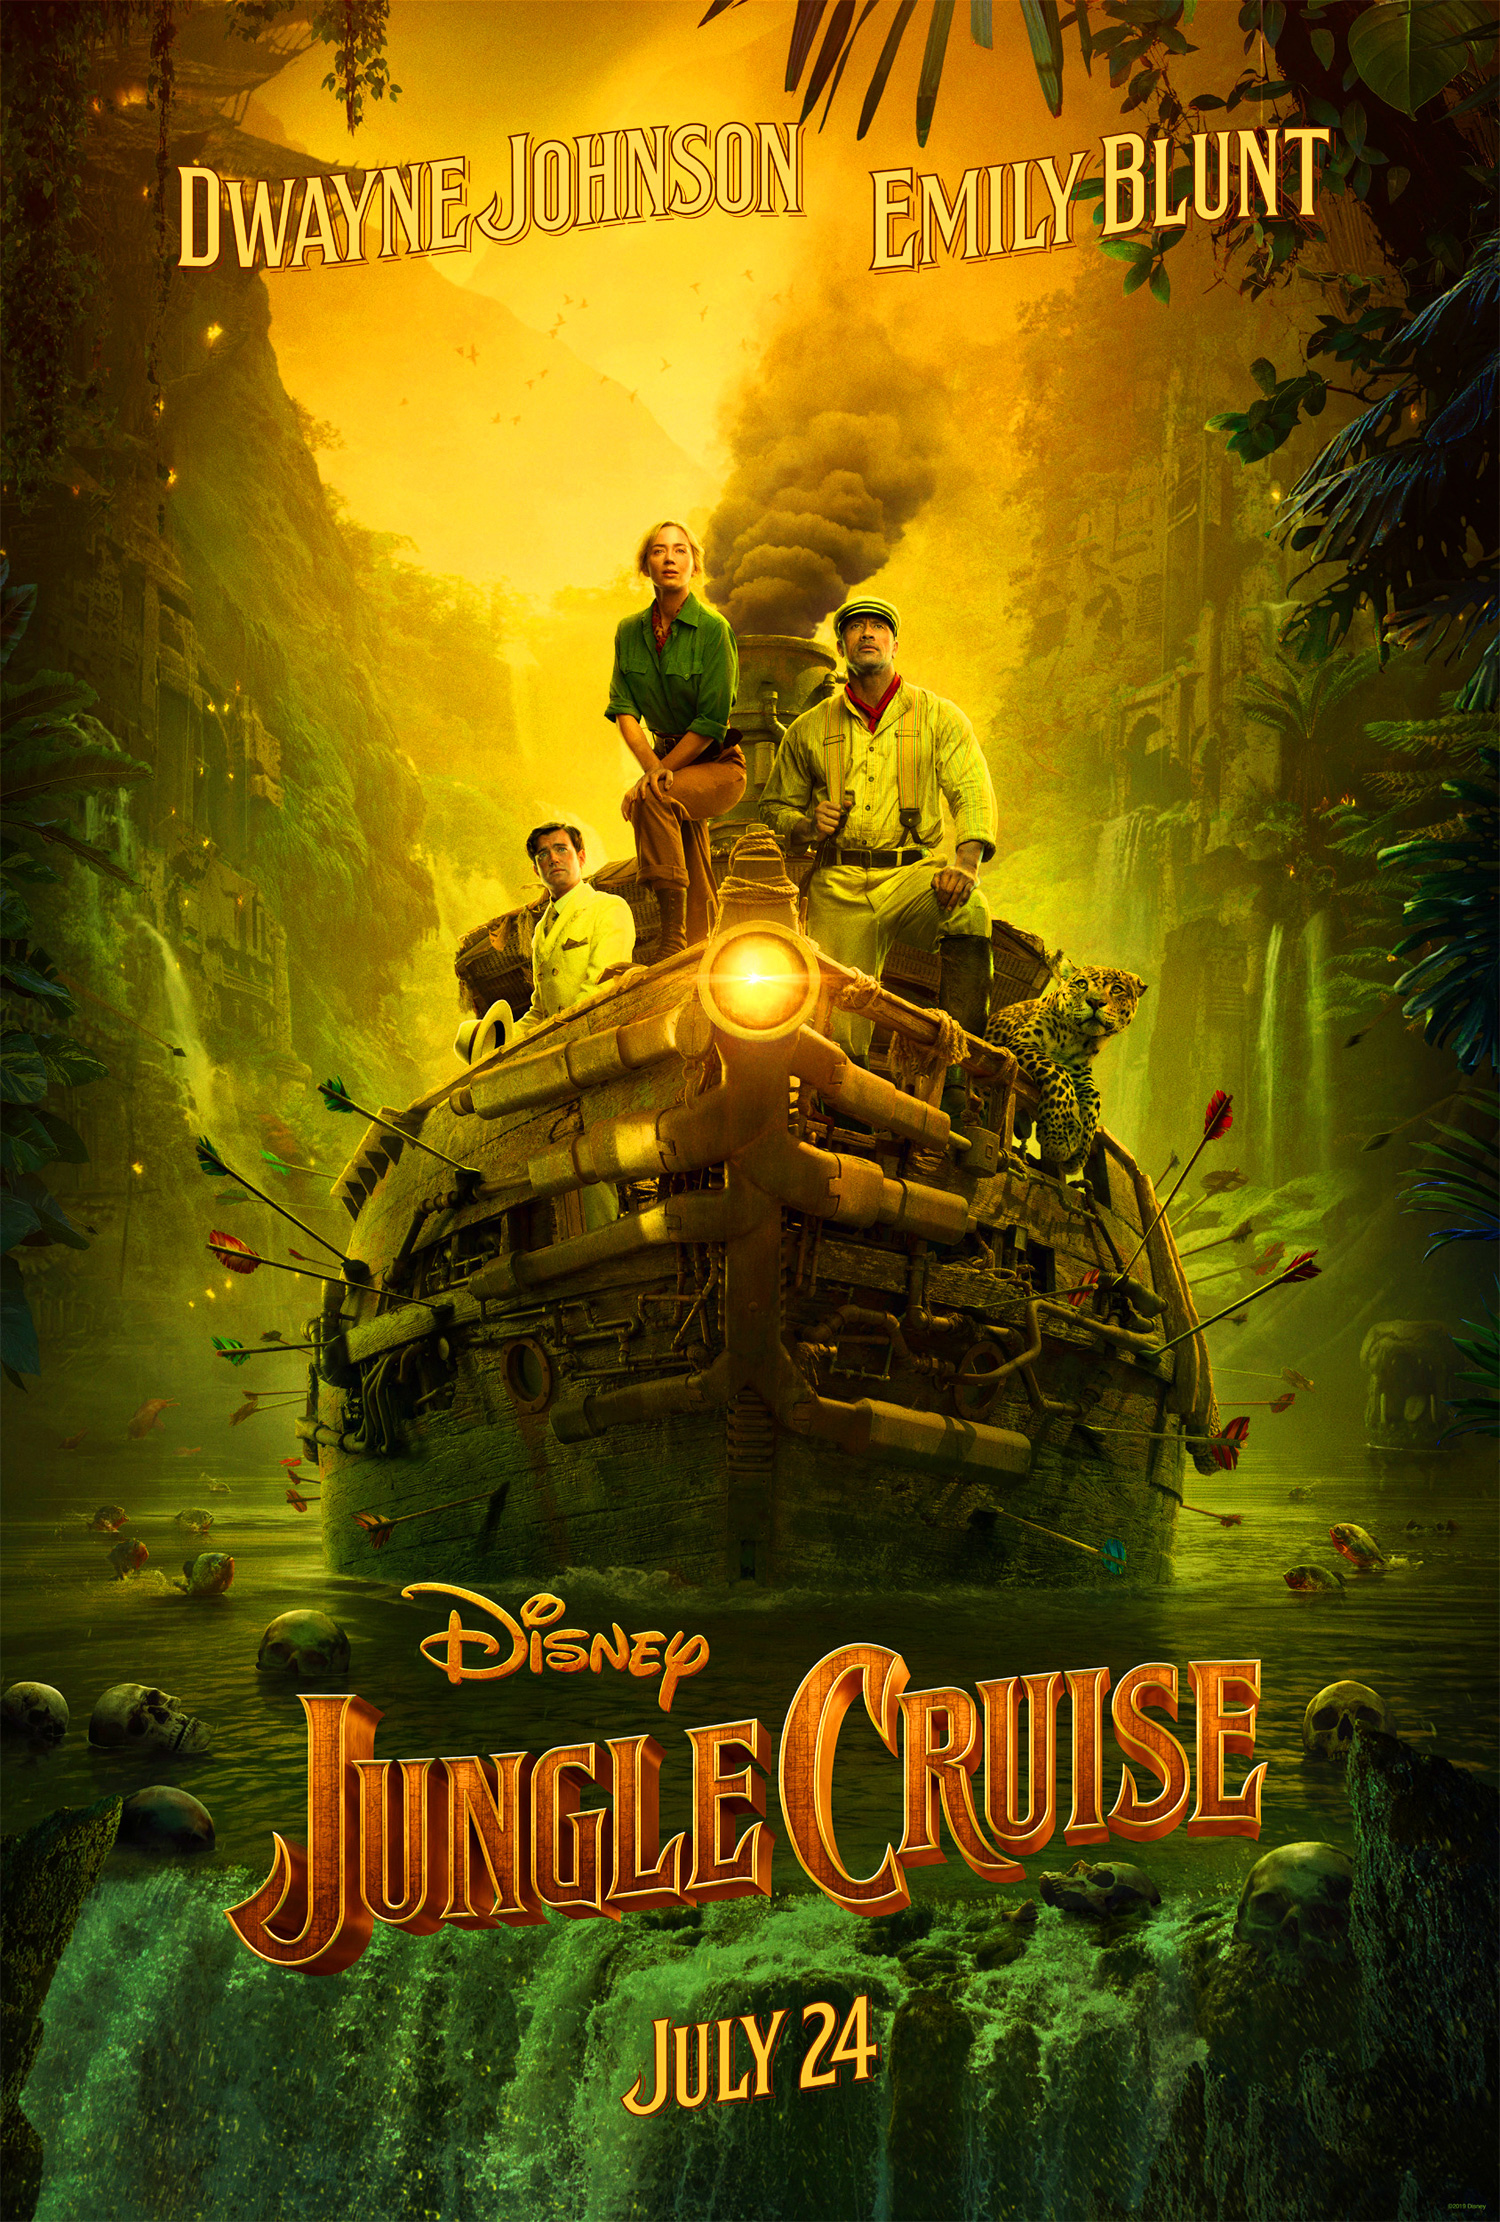 由道恩·强森和艾米莉·布朗特主演的迪士尼动作冒险电影《丛林奇航》